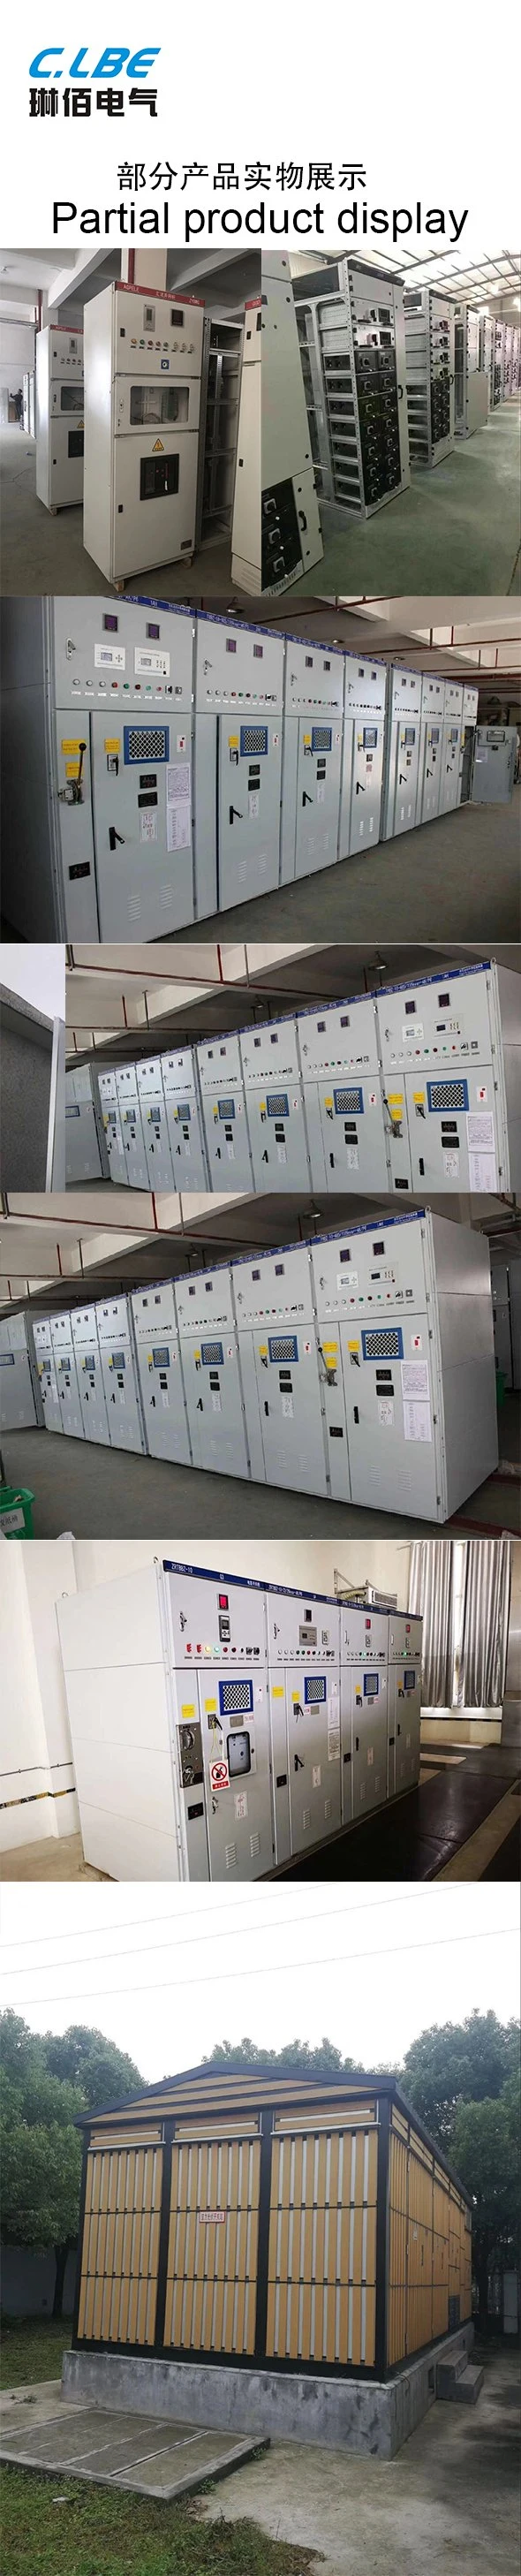 Ybw-12 Substation, Prefabricated Substation, Combined Substation Box Substation Distribution Box